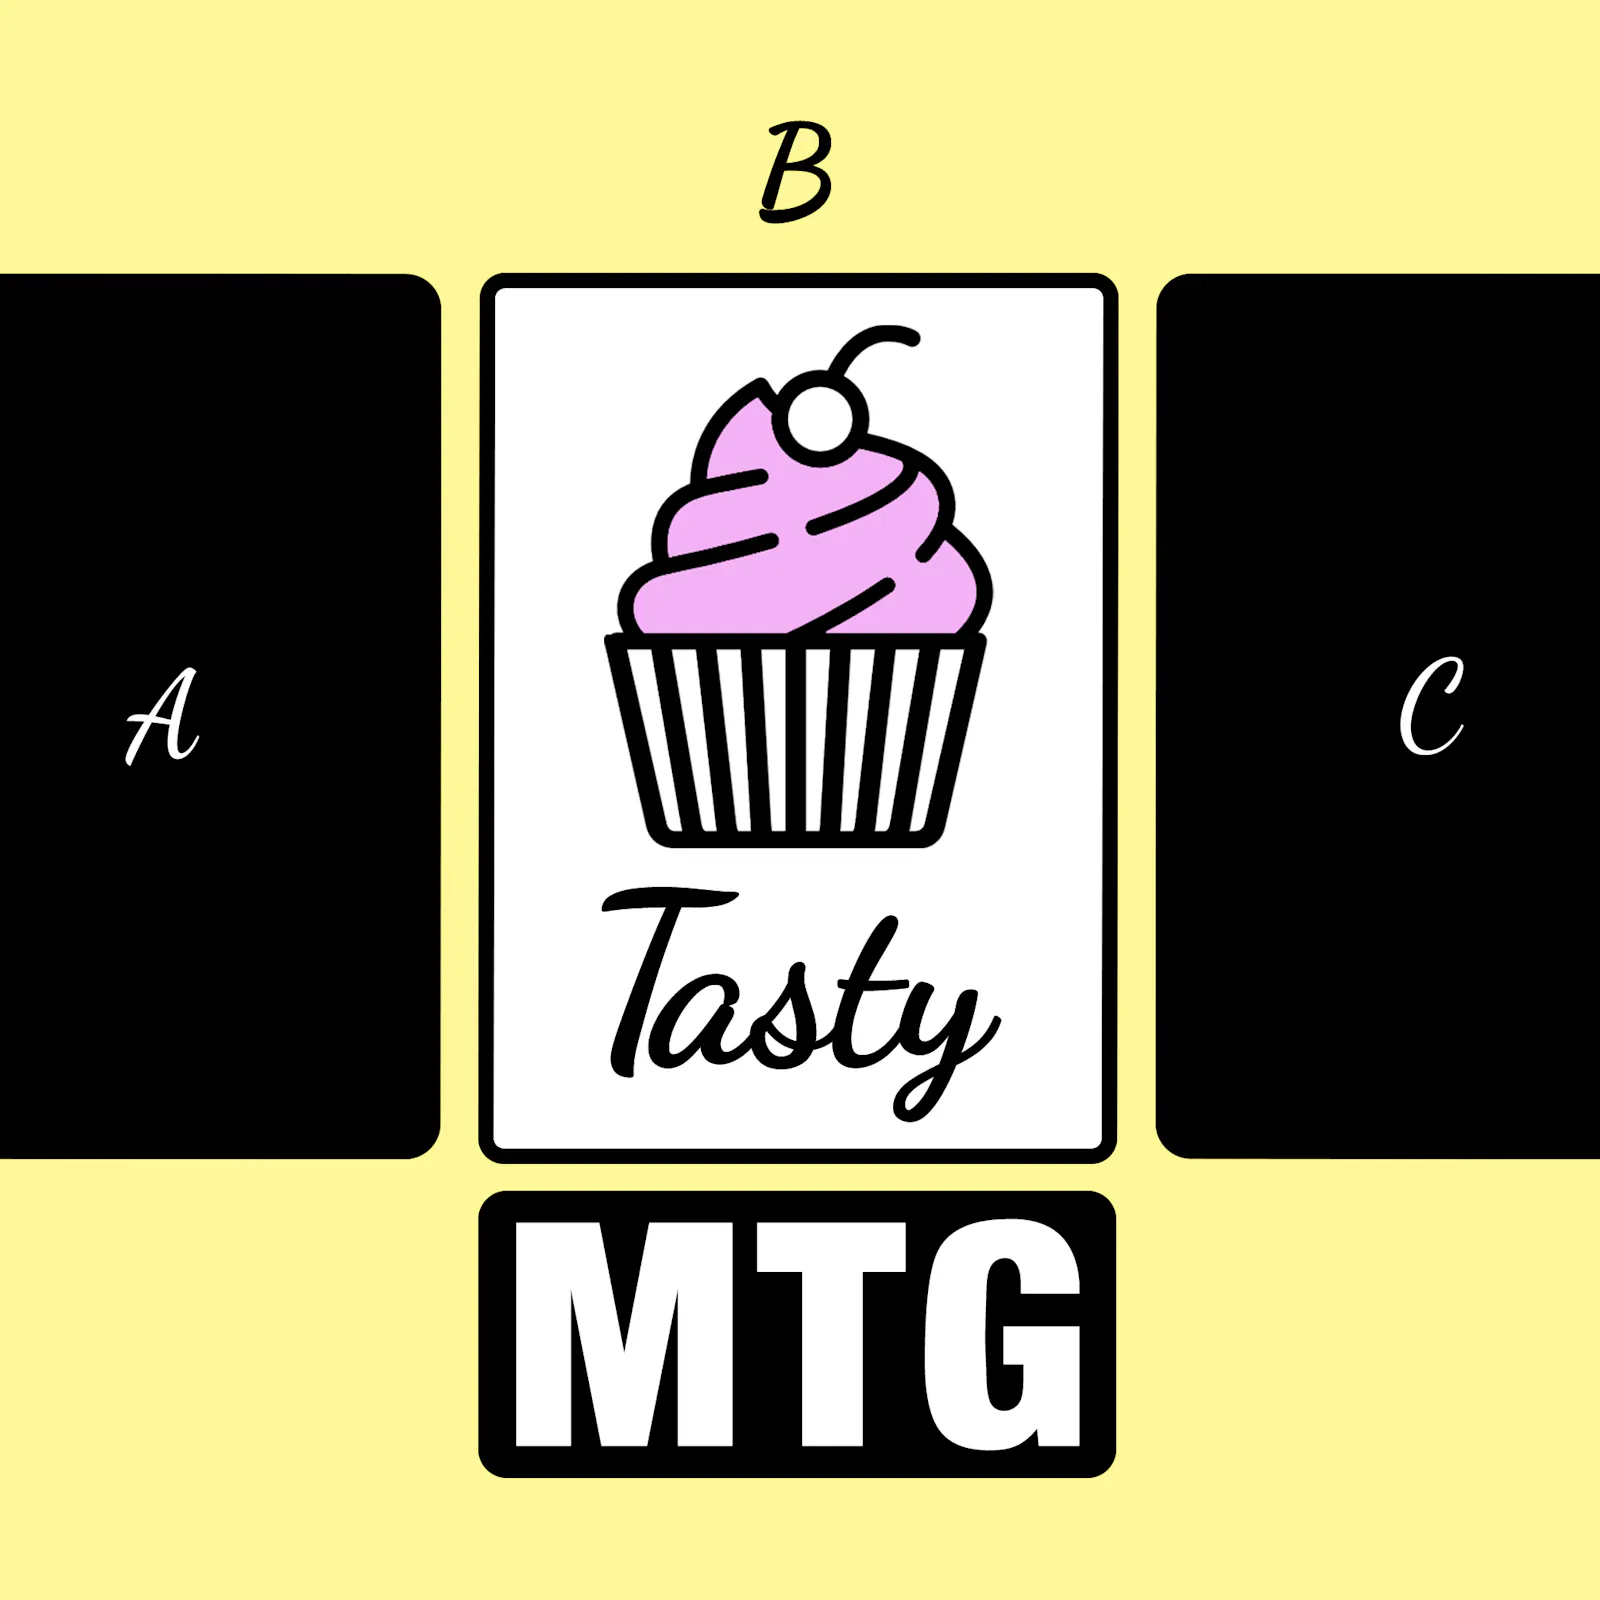 Das Logo zur neuen Folge: Der Cupcake ist einsortiert als "C" zwischen "A" und "B"